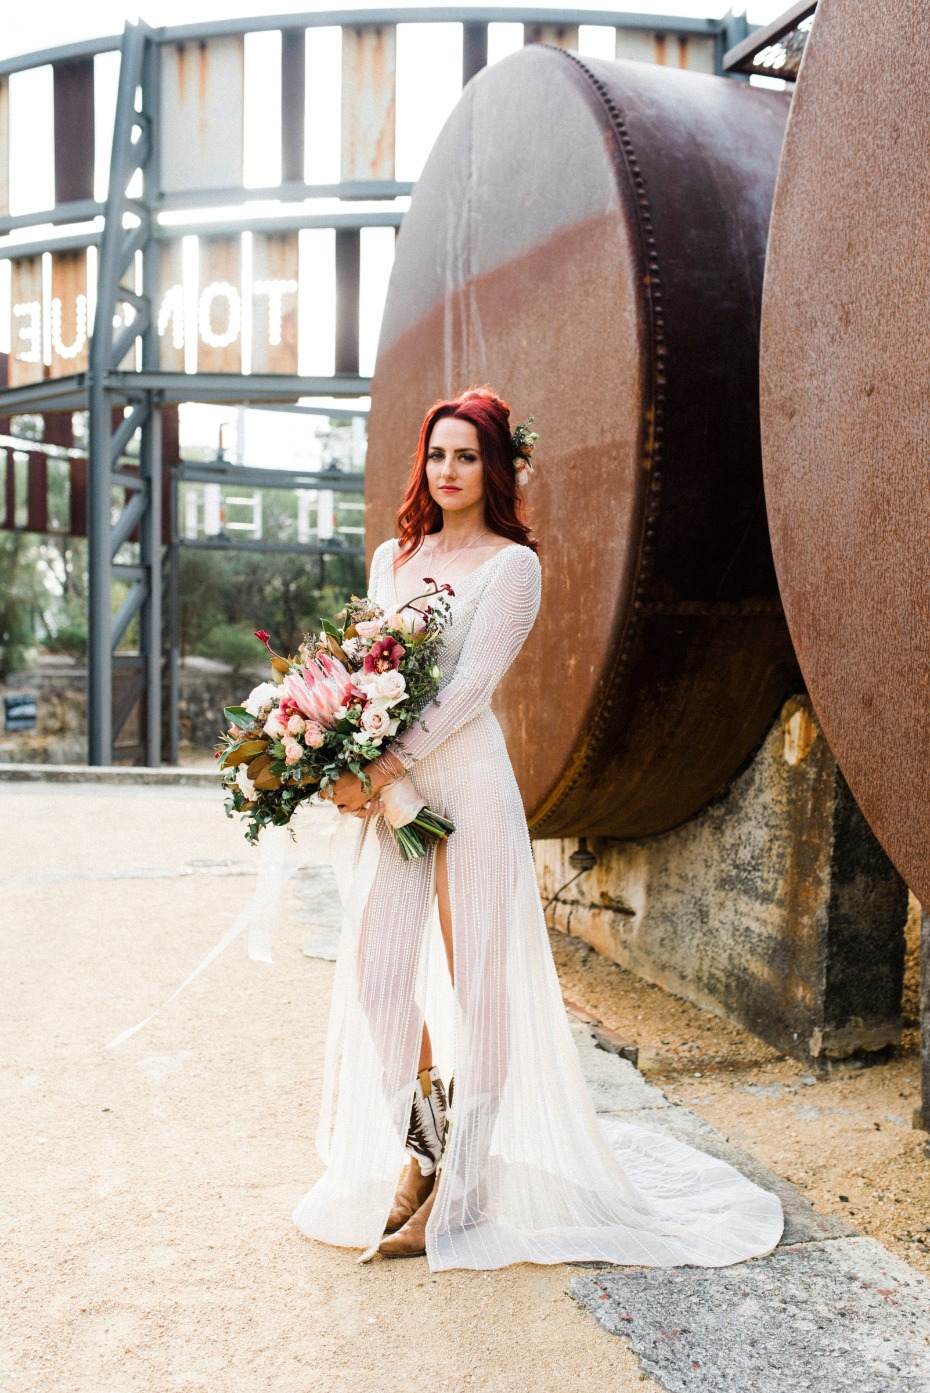 Modern beaded wedding dress from Amber Huett Couture